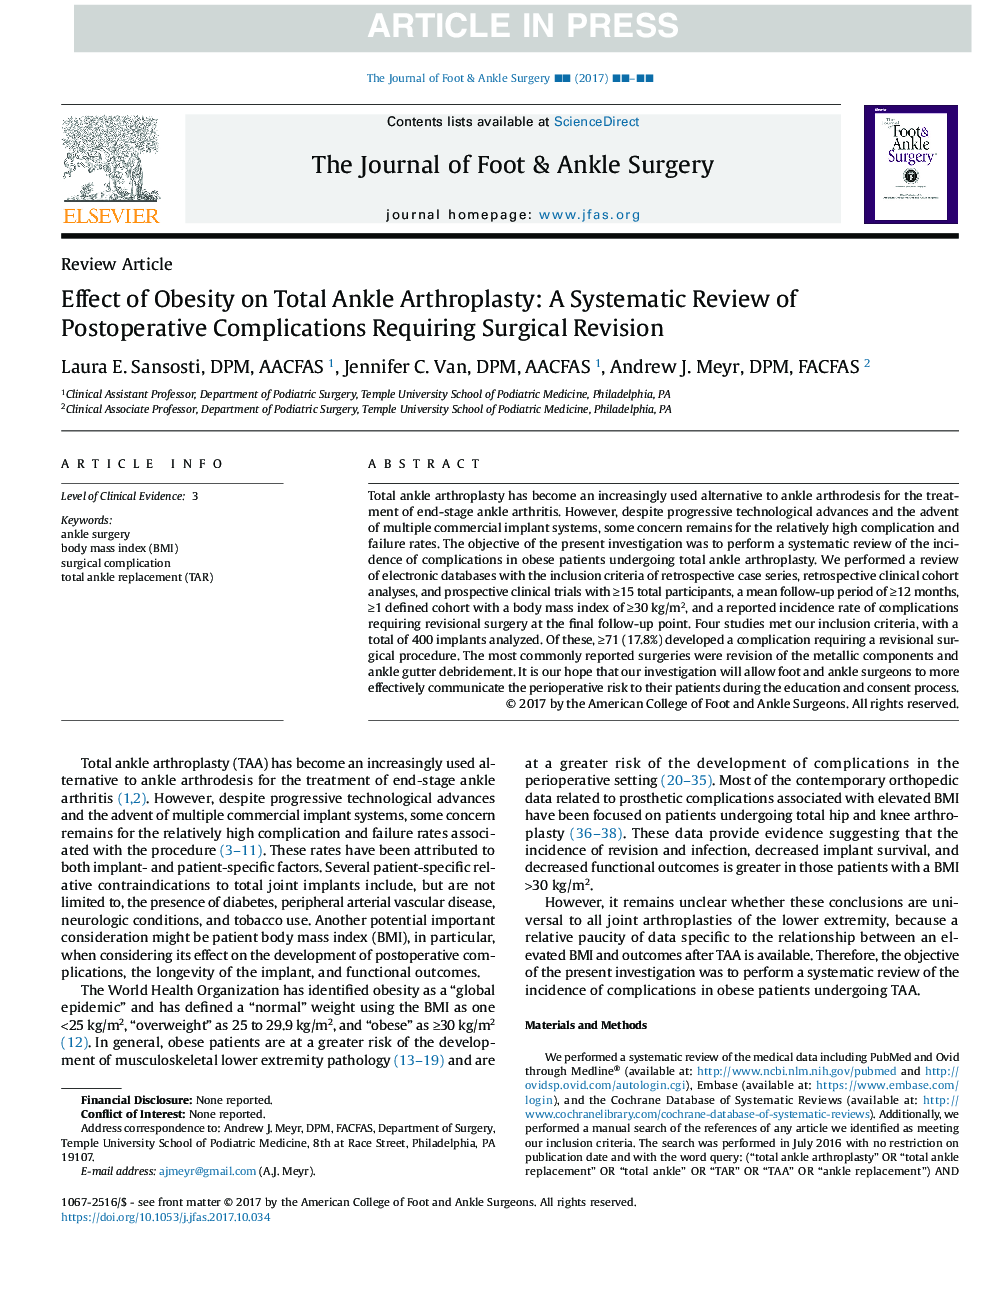 بررسی اثر چاقی بر روی آرتروپلاستی کامل مچ پا: بررسی سیستماتیک عوارض بعد از عمل جراحی 